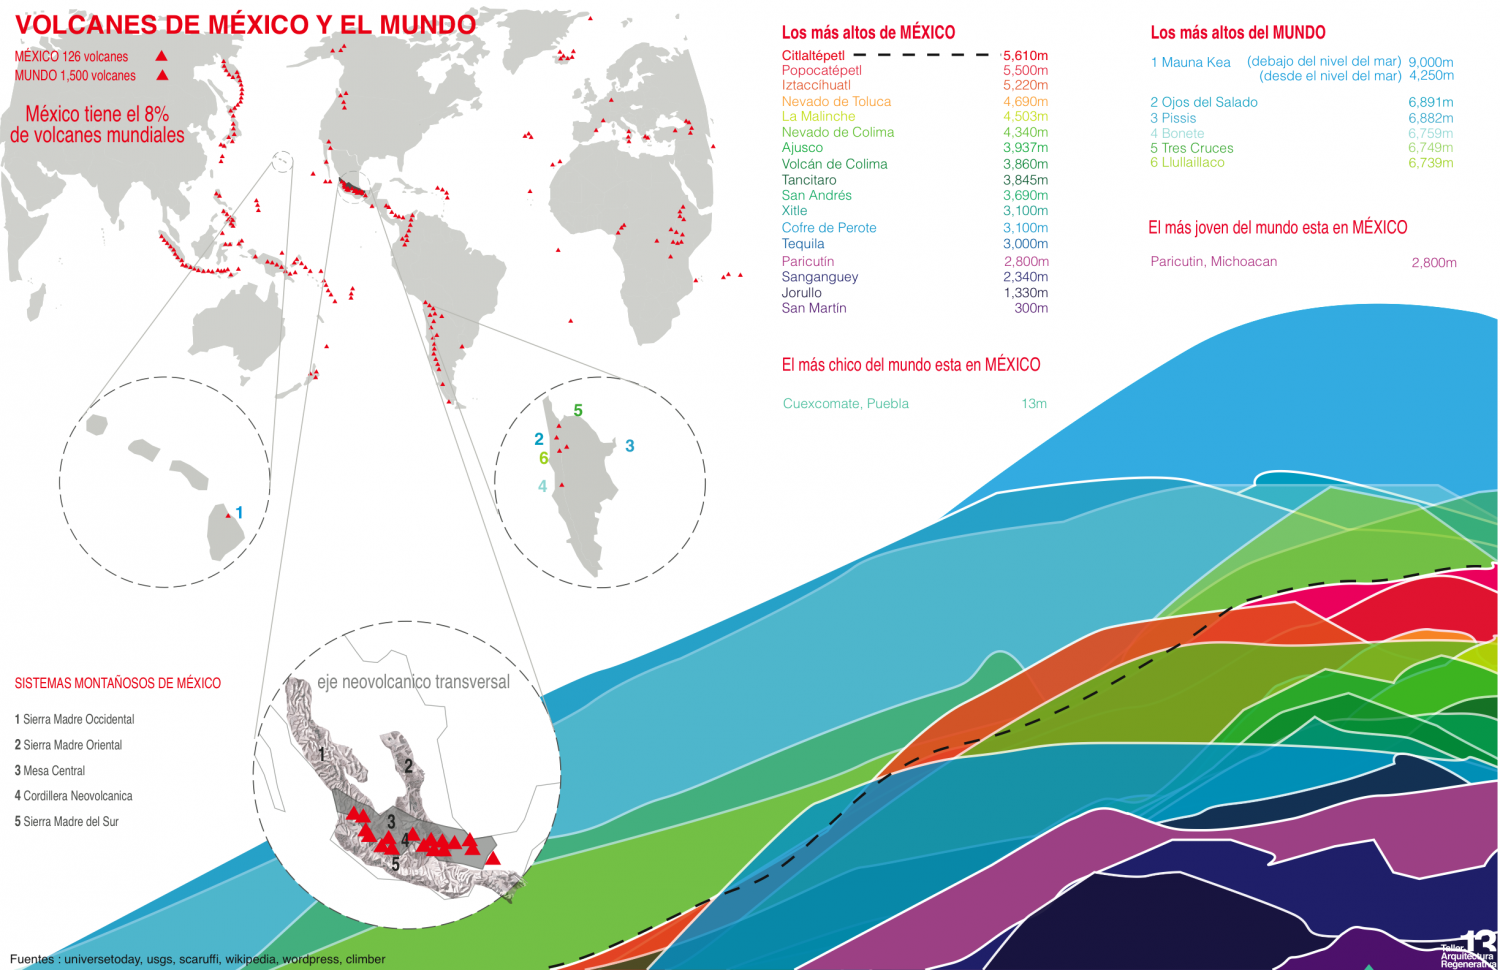 Volcanes de México y el mundo Infographic